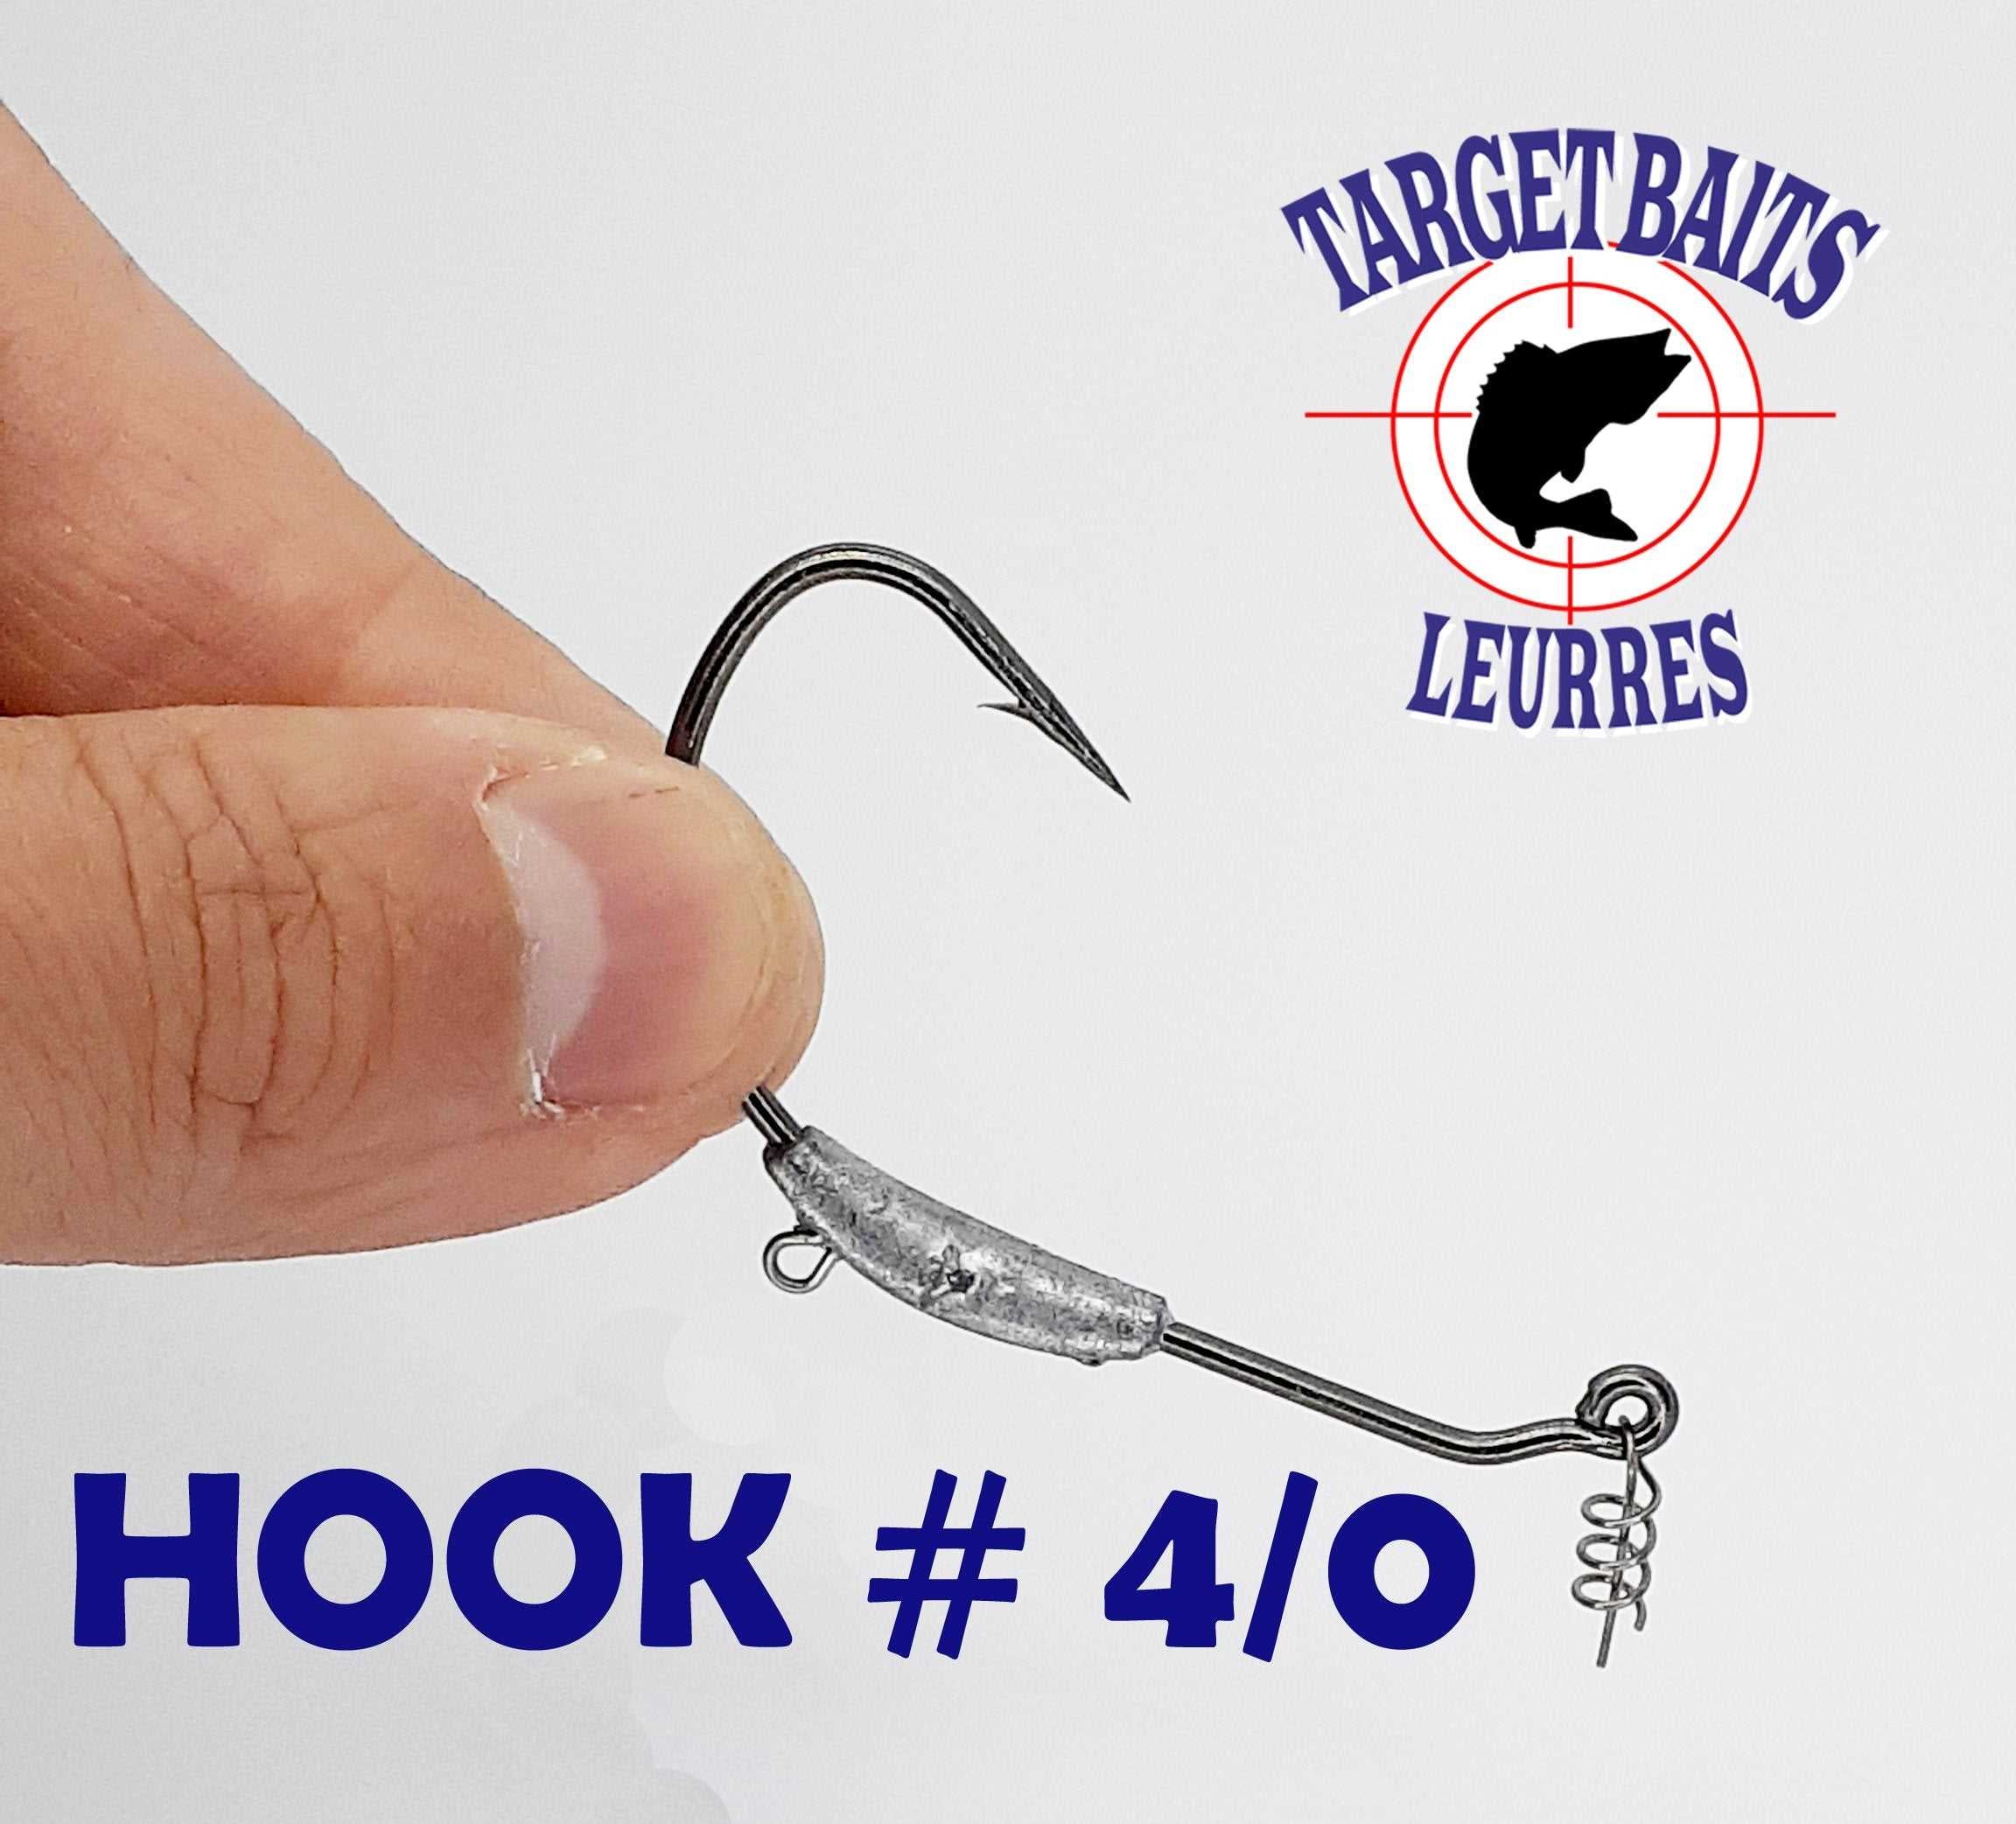 Anti-Herbe Hook #4/0 – Target Baits Leurres